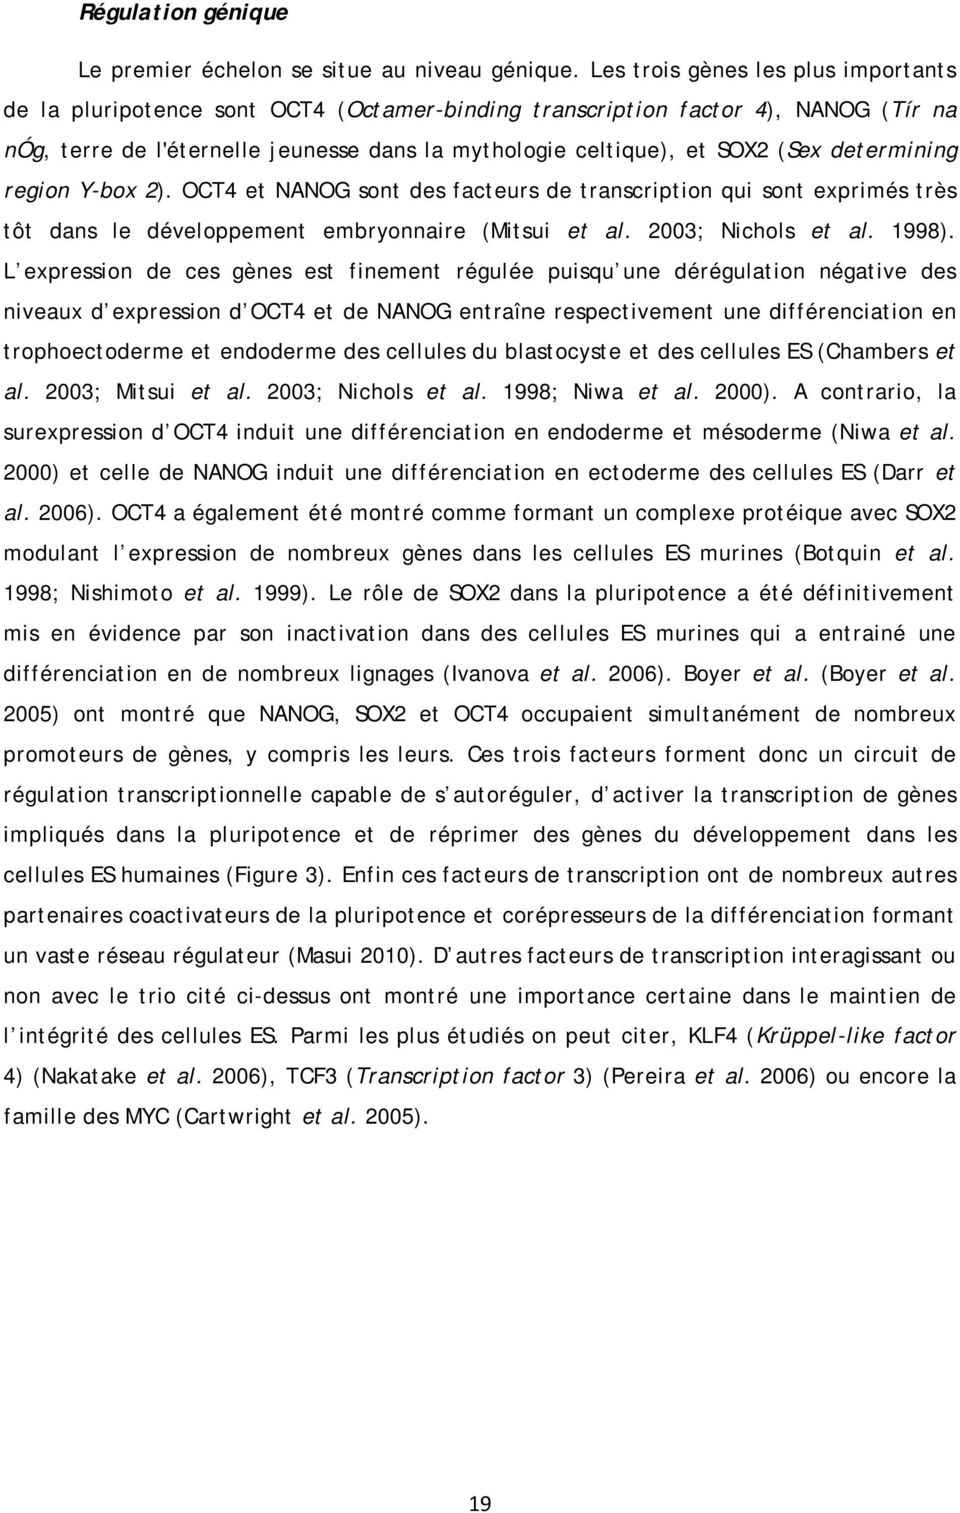 determining region Y-box 2). OCT4 et NANOG sont des facteurs de transcription qui sont exprimés très tôt dans le développement embryonnaire (Mitsui et al. 2003; Nichols et al. 1998).